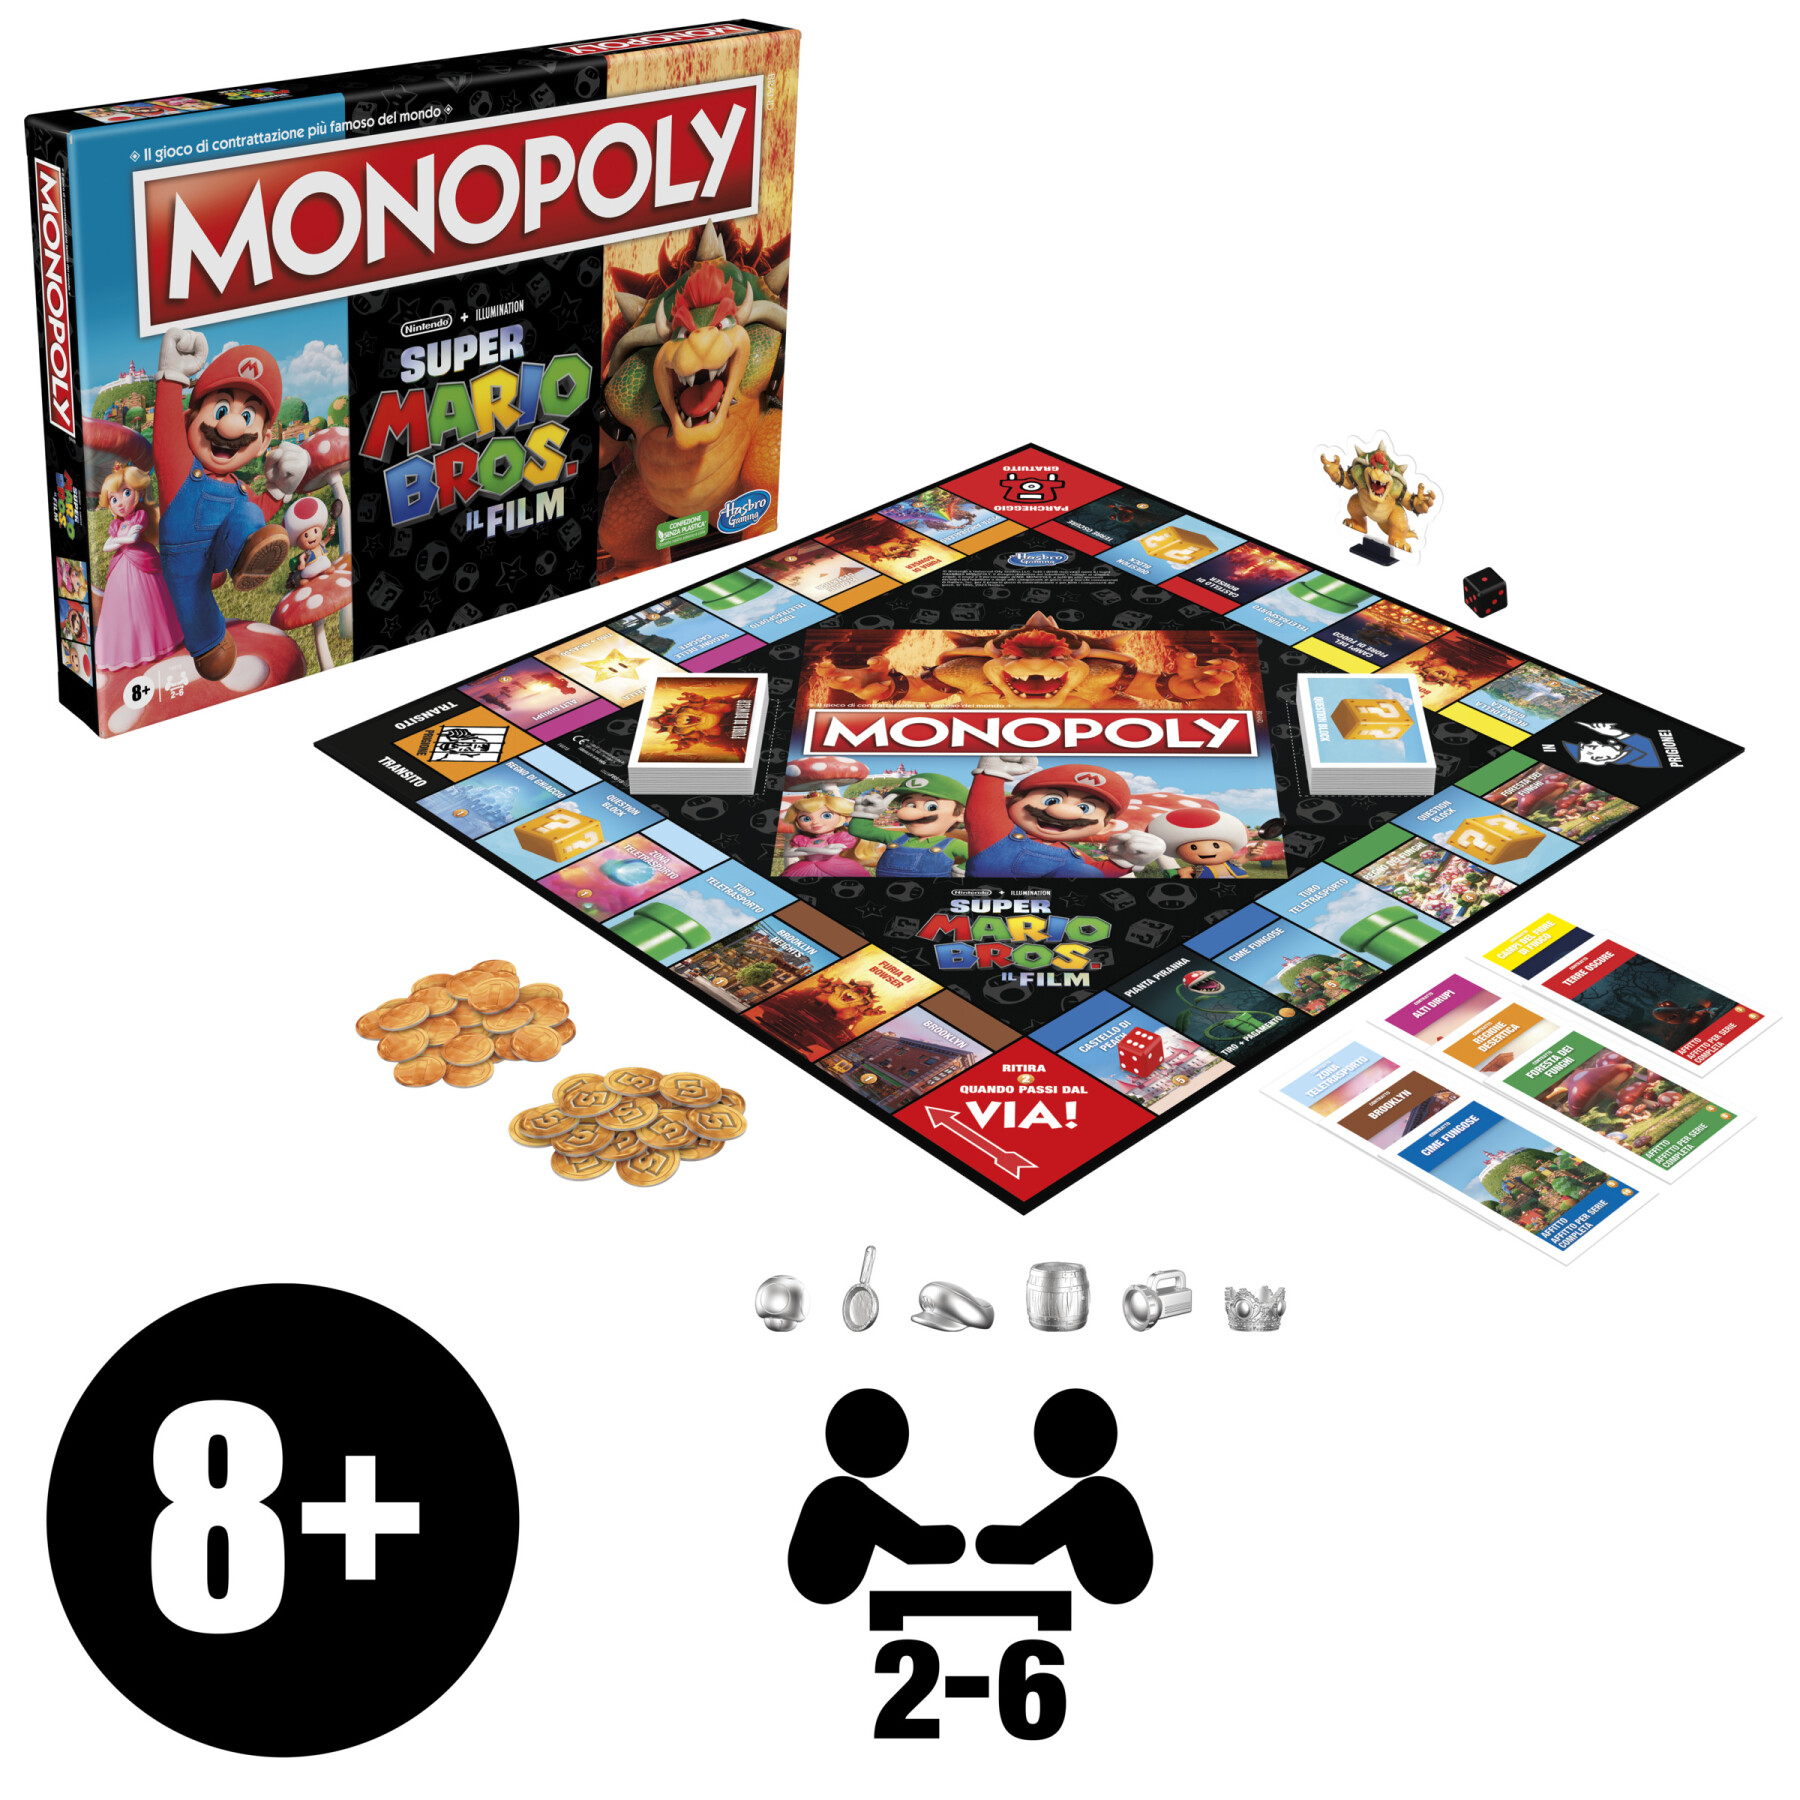 Monopoly the super mario bros. movie edition, gioco da tavolo per bambini e bambine, contiene la pedina di bowser, giochi per famiglie - MONOPOLY, Super Mario